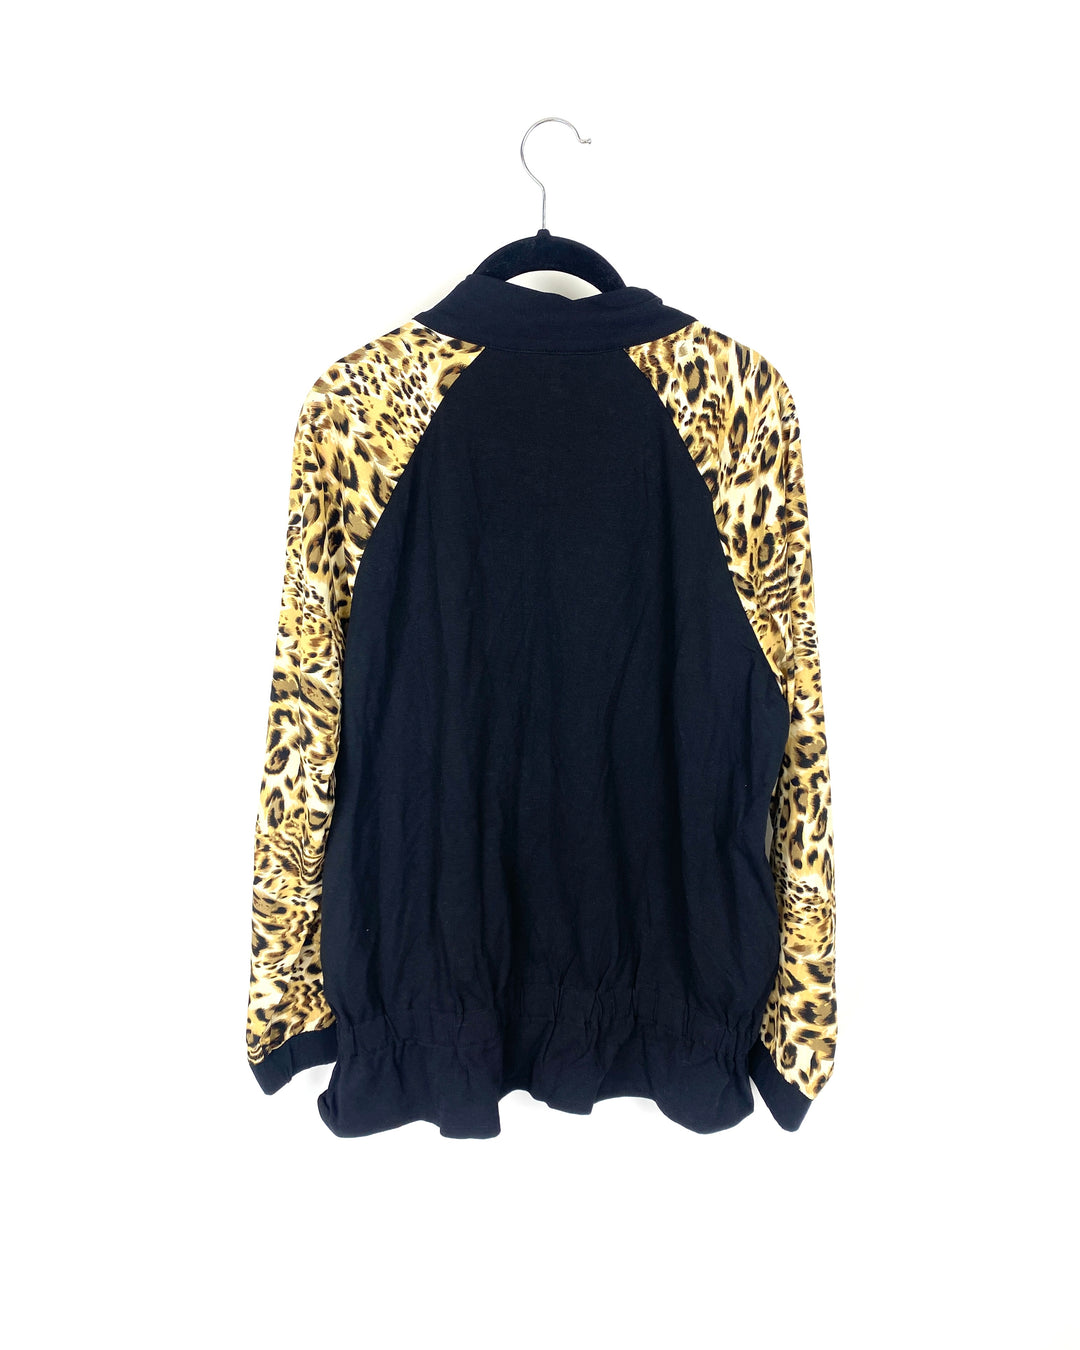 Black And Cheetah Print Jacket - Small/Medium